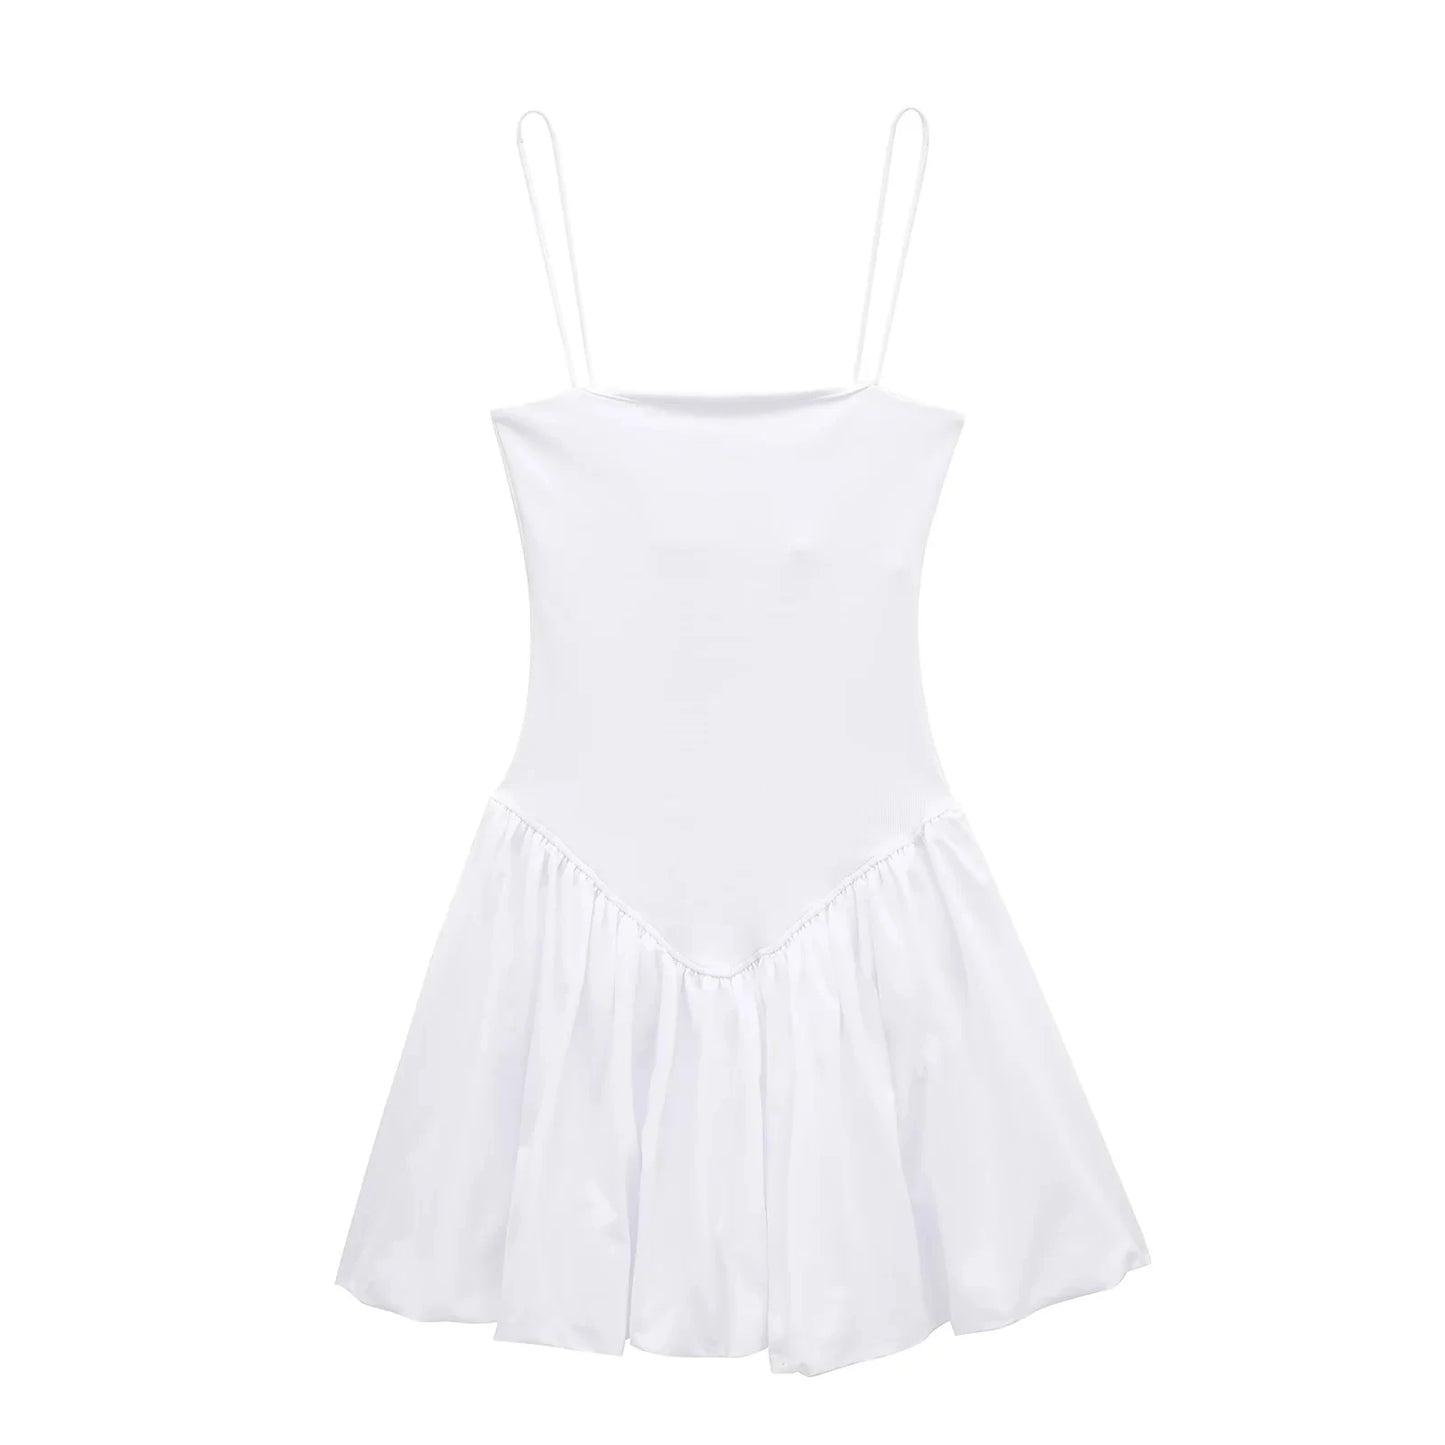 Mini Dresses- Women's Fit & Flare Little Black Dress for Summer- white- Chuzko Women Clothing